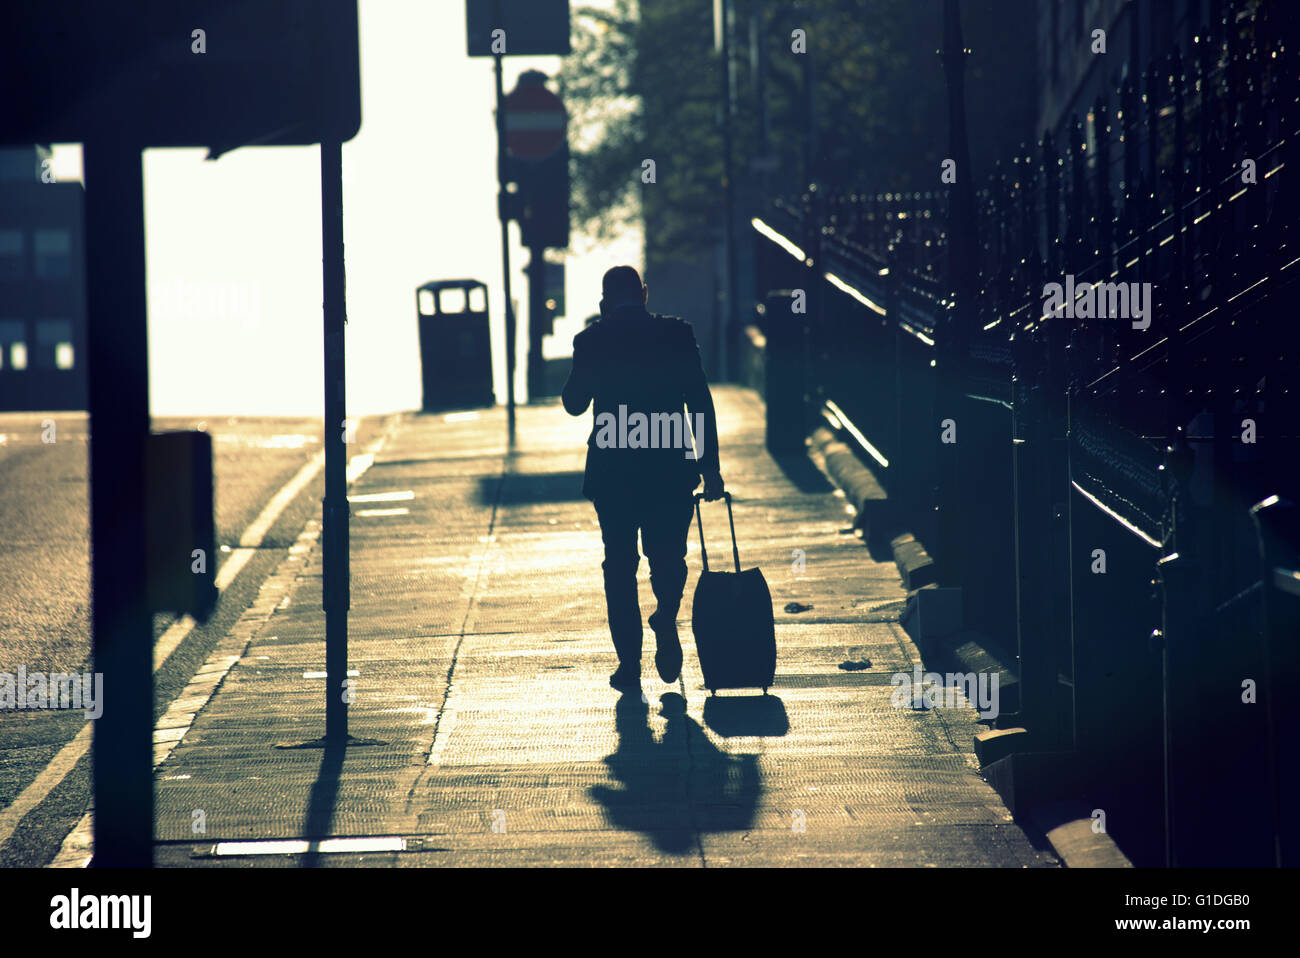 Silhouette der Mann am Telefon mobile auf Glasgow Straße mit Straße Contre-Jour Hintergrundbeleuchtung in Glasgow, Schottland, Großbritannien. Stockfoto